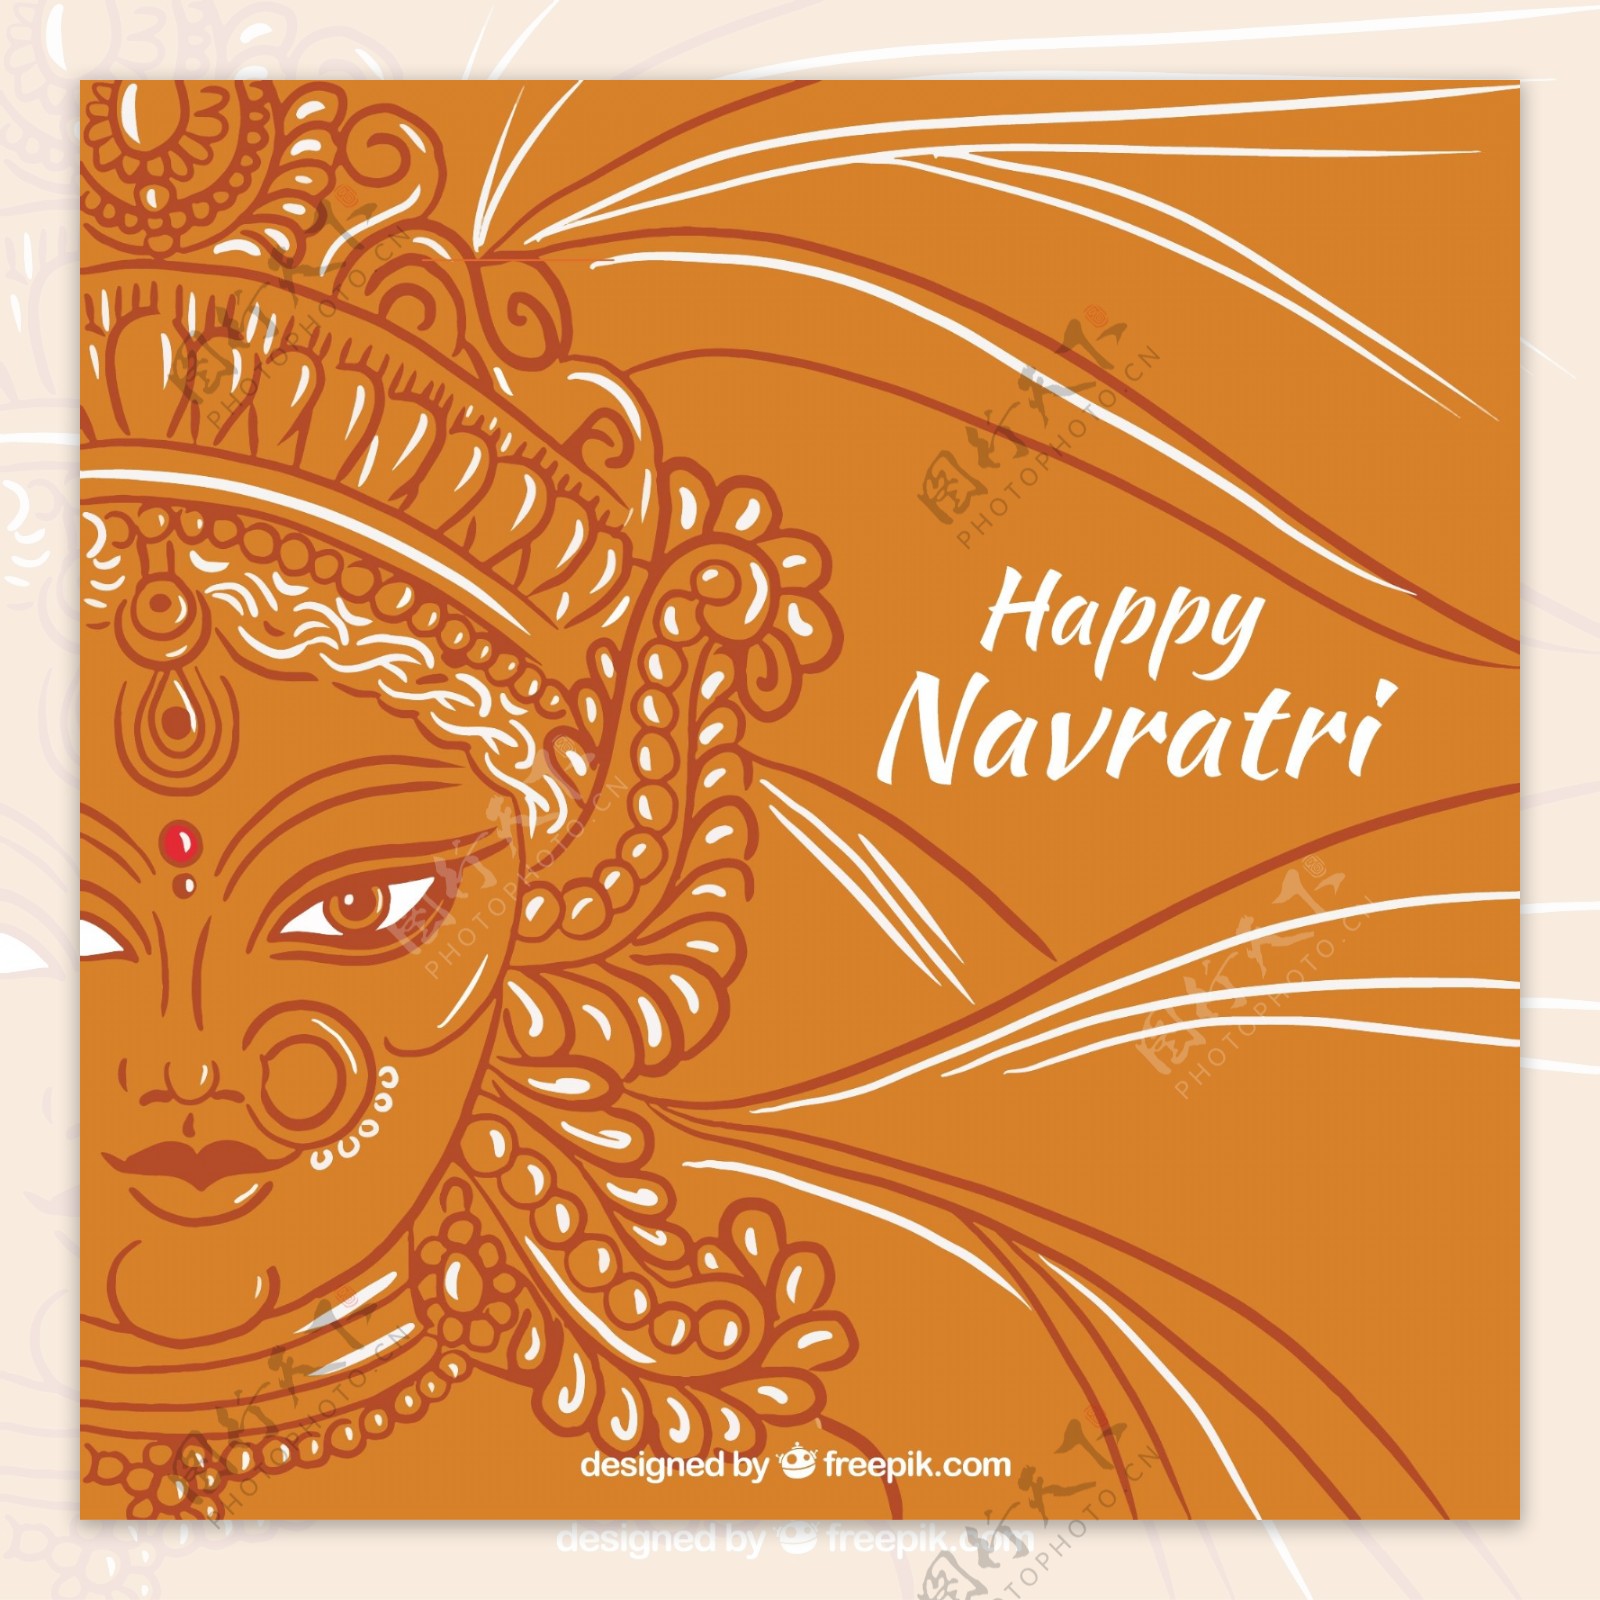 快乐Navratri背景杜迦的脸